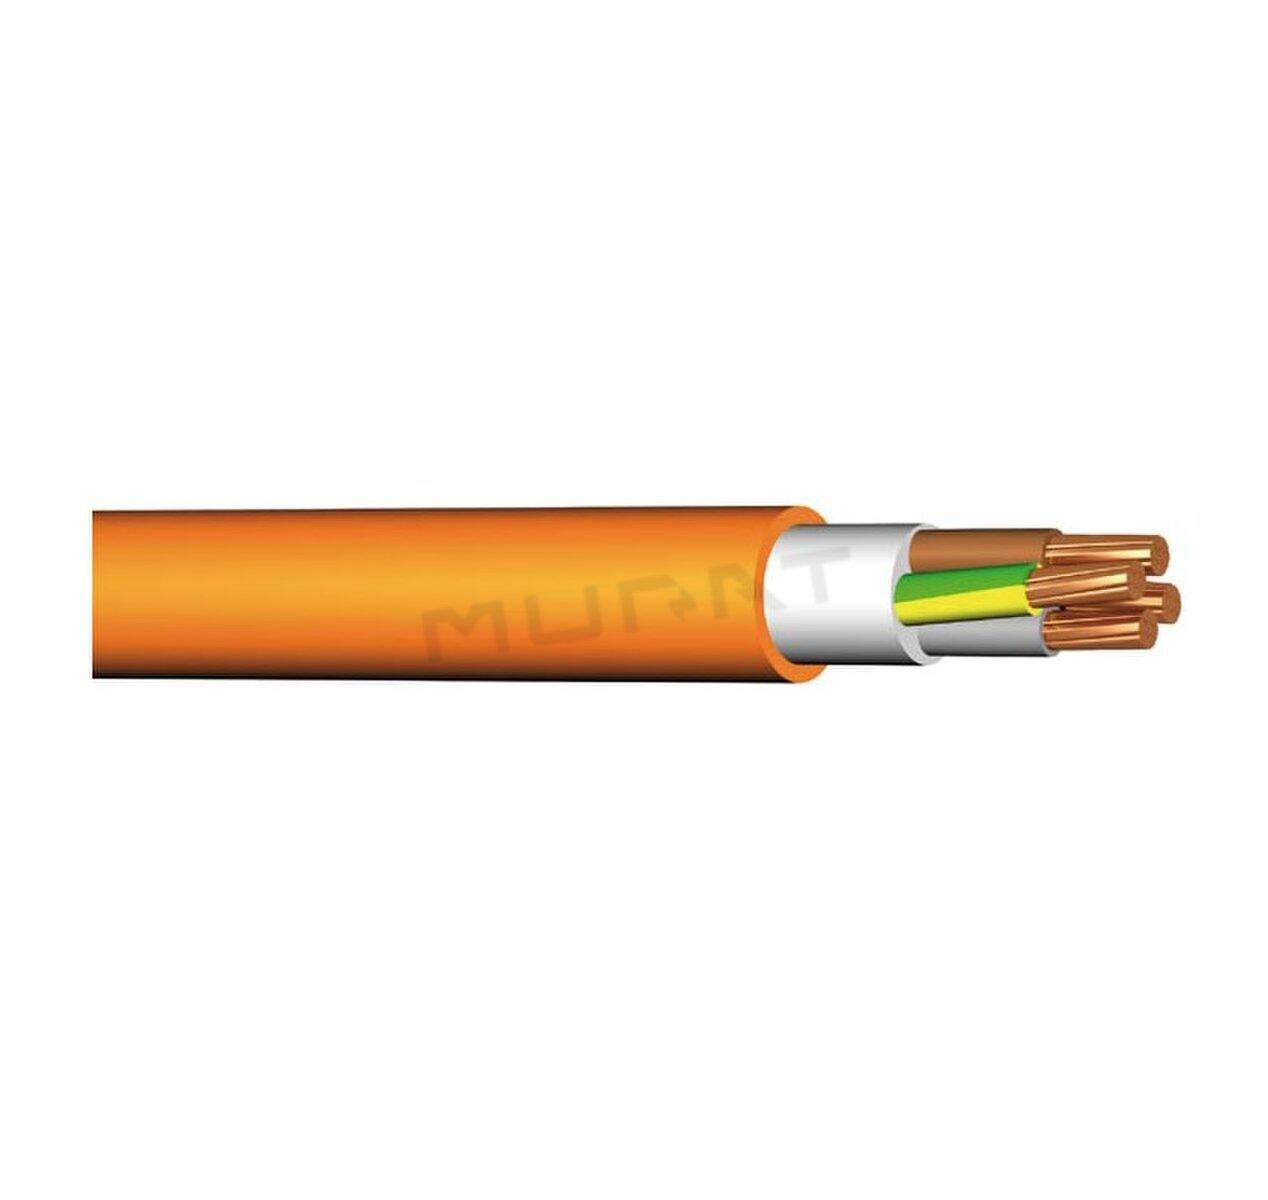 Kábel PRAFlaSafe +X-J 1x6 mm2 RE 1–CXKH–R+B2ca s1d1a1